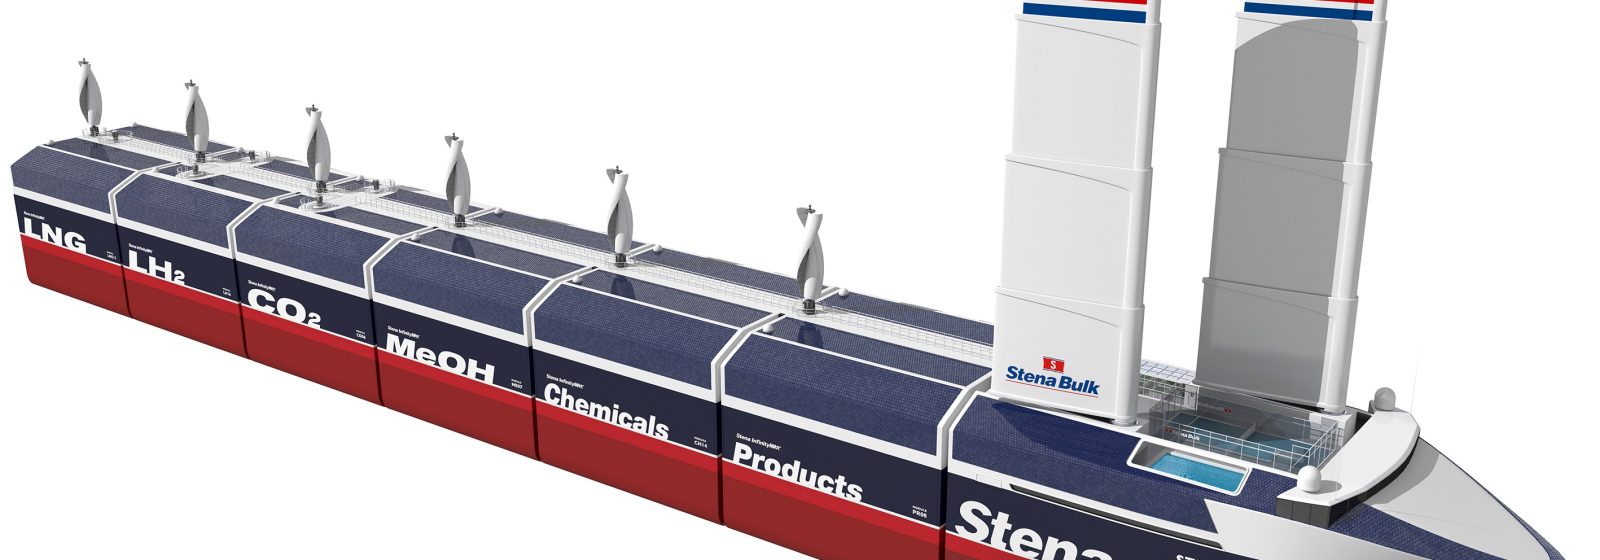 Ontwerp van hybride bulkcarrier 'InfinityMAX' van rederij Stena Bulk